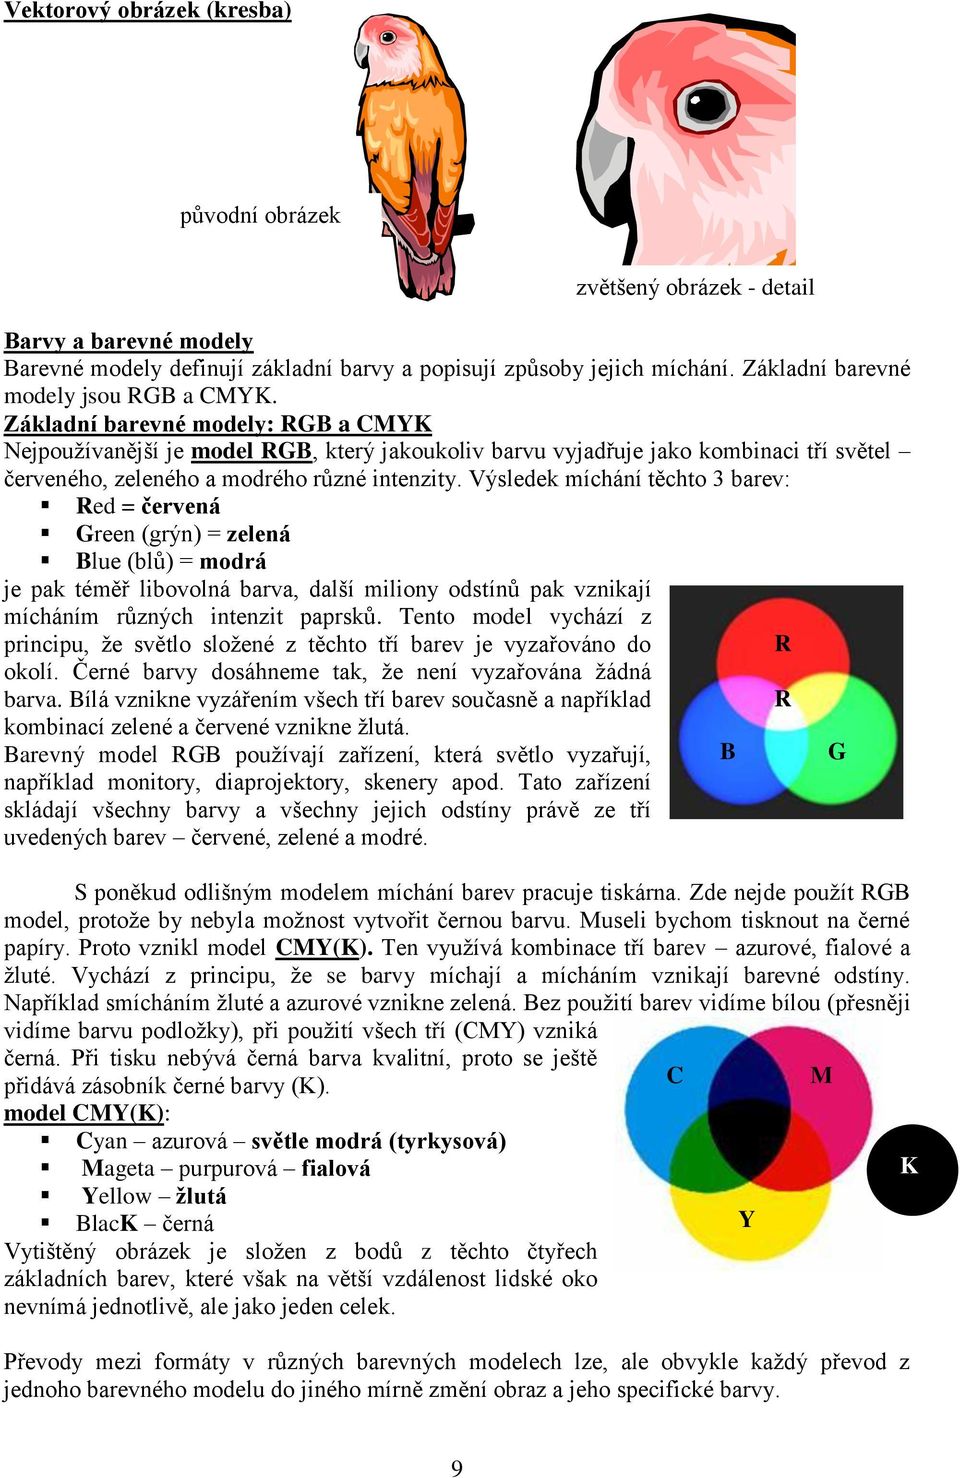 Základní barevné modely: RGB a CMYK Nejpouţívanější je model RGB, který jakoukoliv barvu vyjadřuje jako kombinaci tří světel červeného, zeleného a modrého různé intenzity.